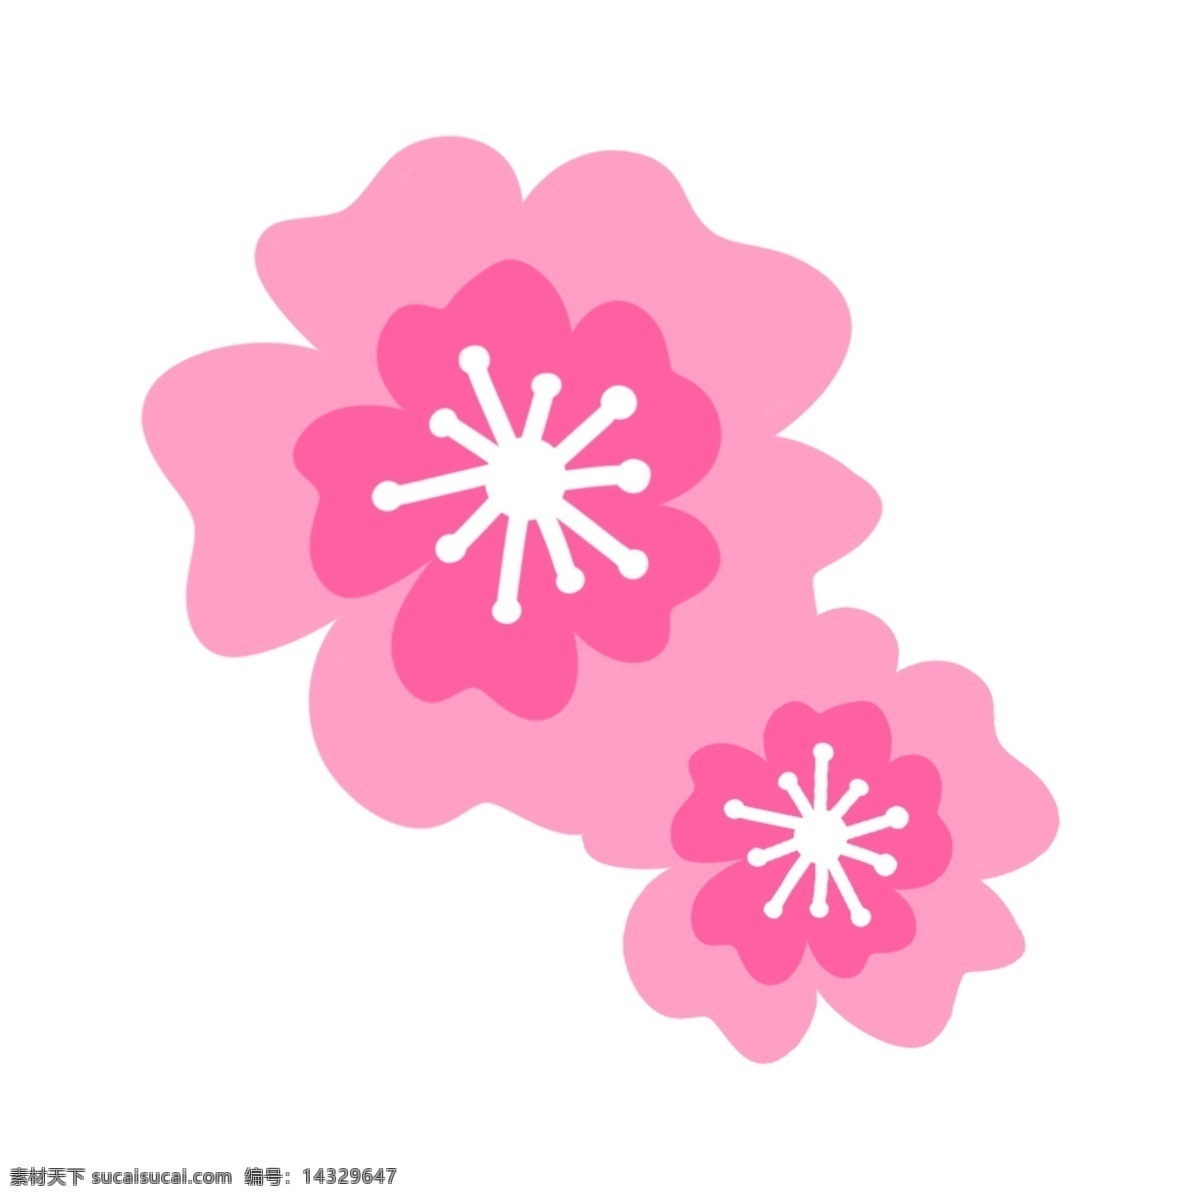 粉红色 创意 桃花 樱花 矢量 创意花 花朵 花卉图案 花开富贵 时尚花朵 矢量花朵 植物花朵 清新